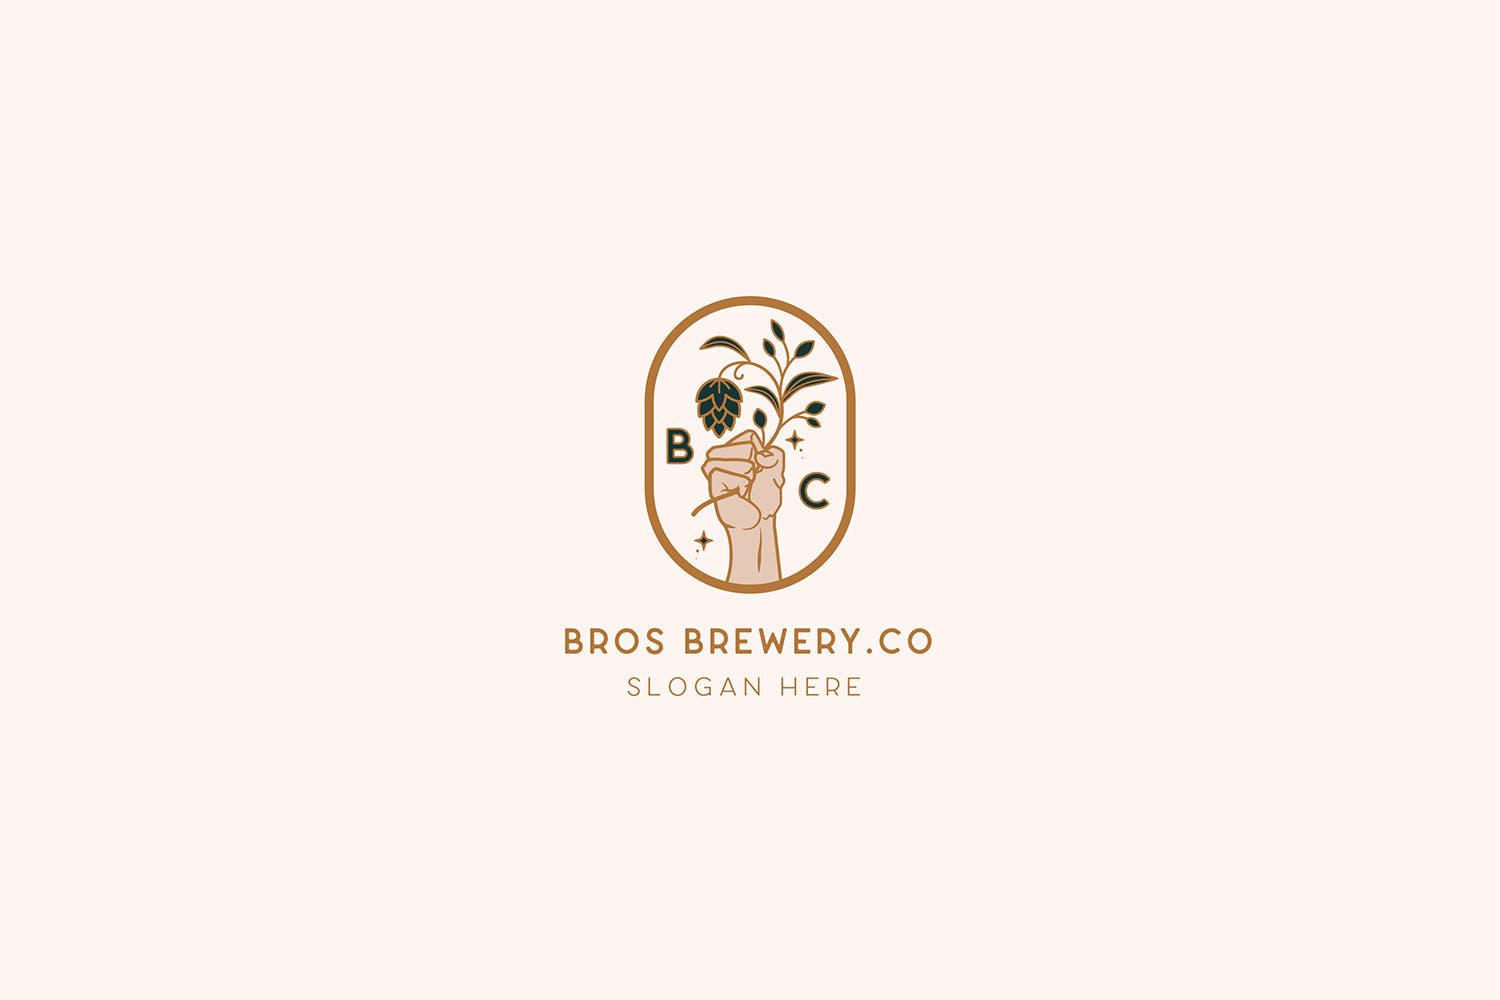 咖啡/啤酒品牌Logo设计16设计网精选模板 Brewery Brotherhood cafe beer Logo Template插图(1)